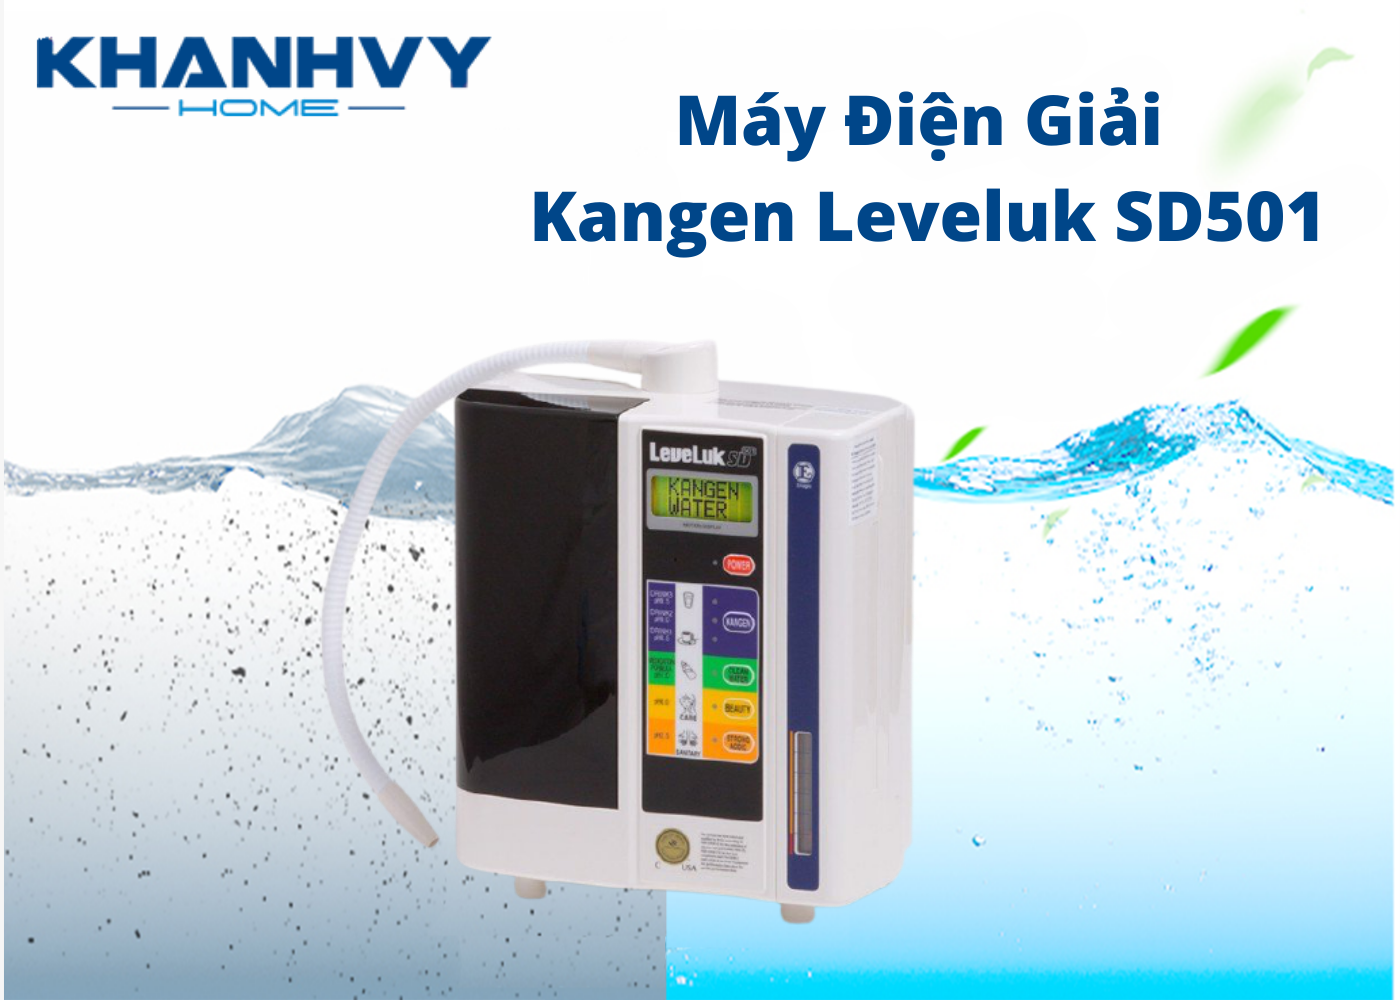 Sản phẩm máy lọc nước Kangen Leveluk SD501